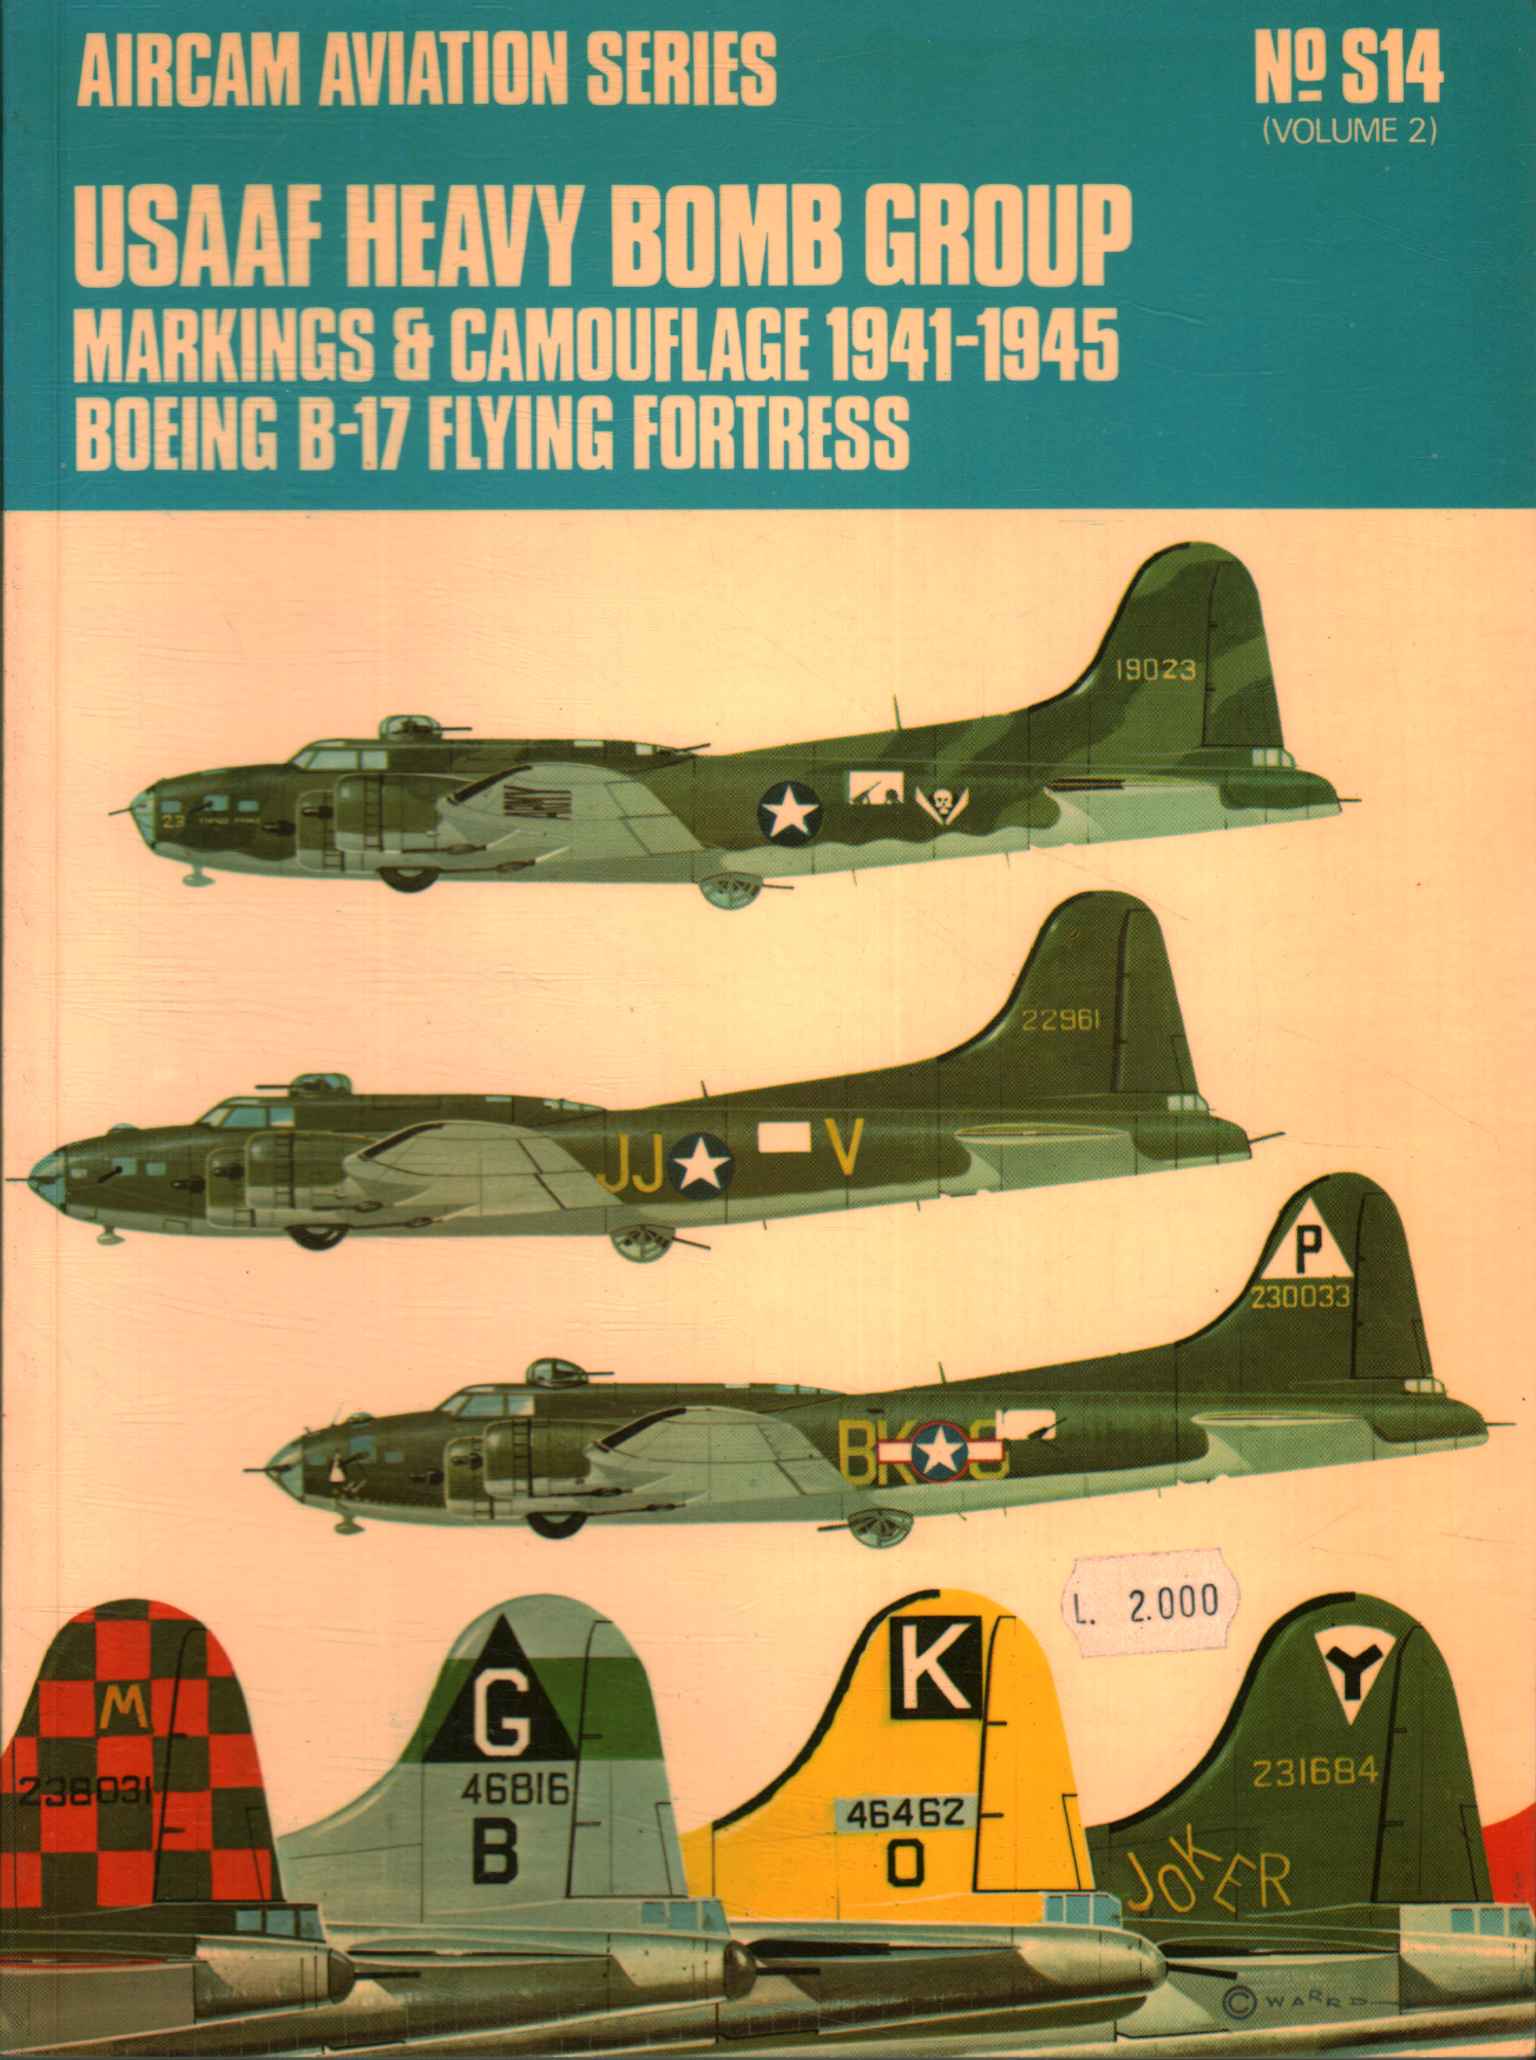 Schwere Bombengruppe der USAAF. Markierungen und Nocken